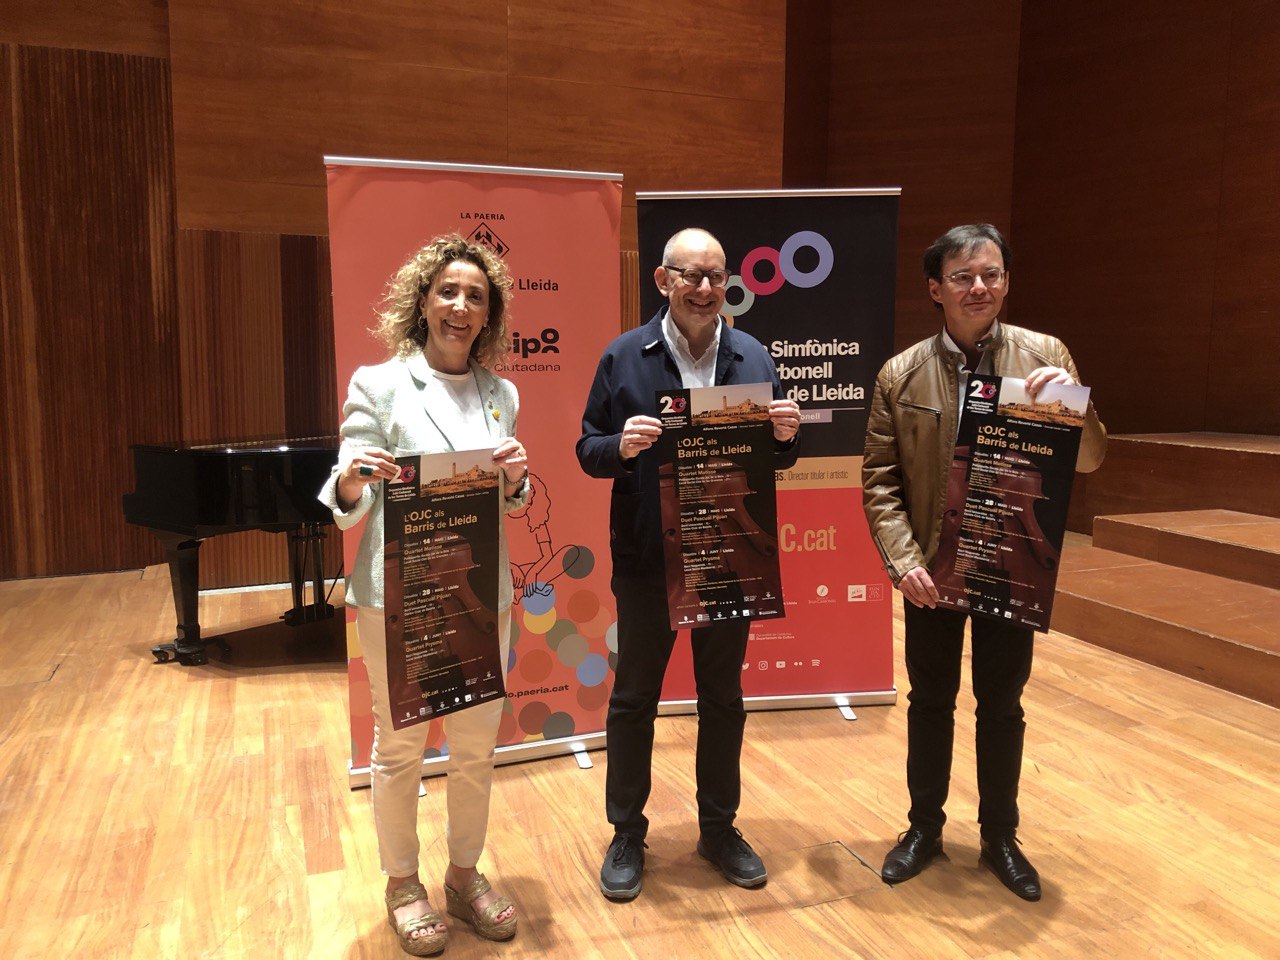 La regidora de Participació, Marta Gispert, i el regidor de Cultura, Jaume Rutllant, acompanyats del director de l’Orquestra Julià Carbonell, Alfons Reverté, han presentat la 3a edició del cicle 